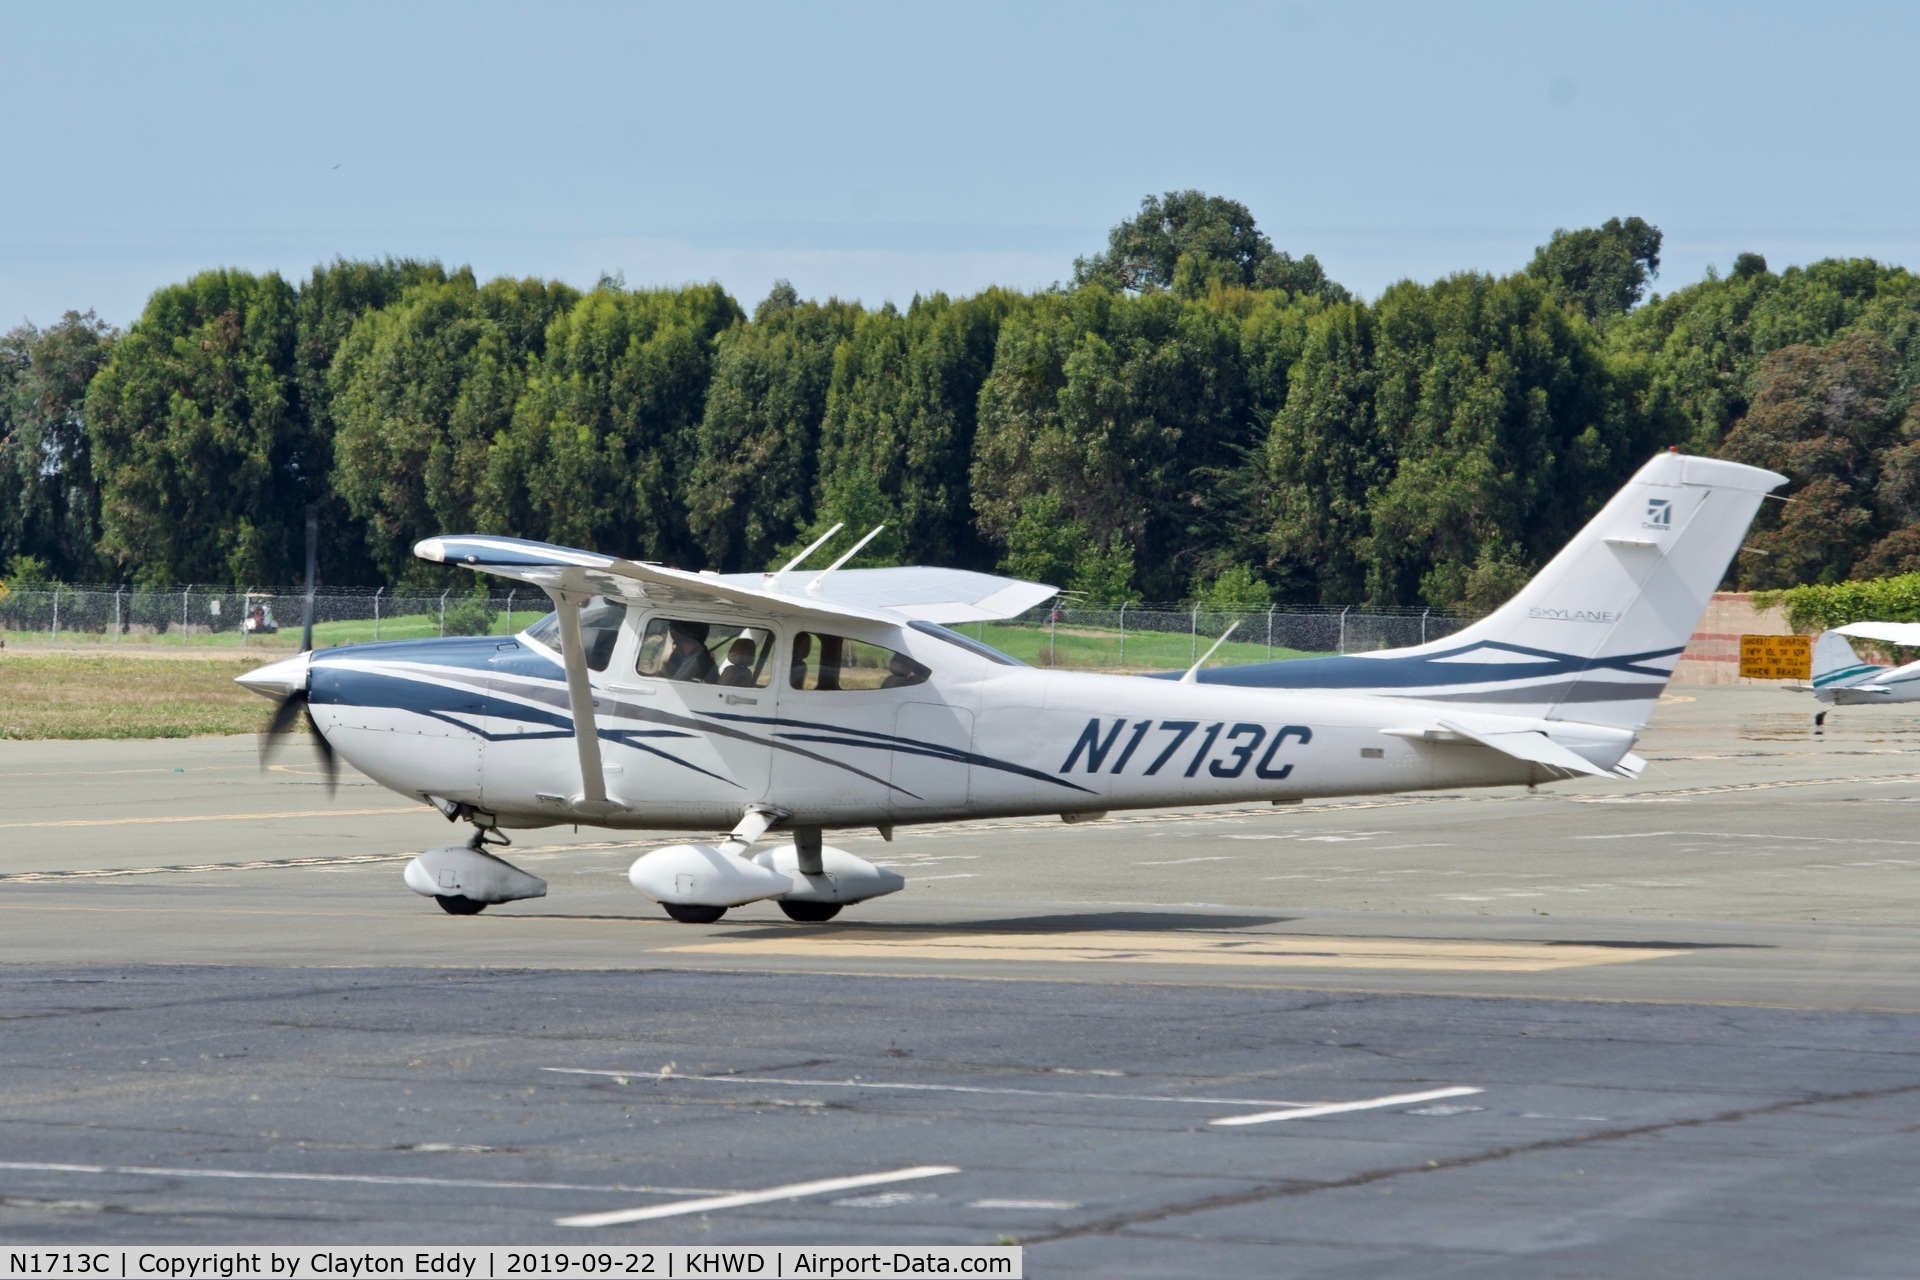 N1713C, 2007 Cessna 182T Skylane C/N 18282013, Hayward Airport California 2019.